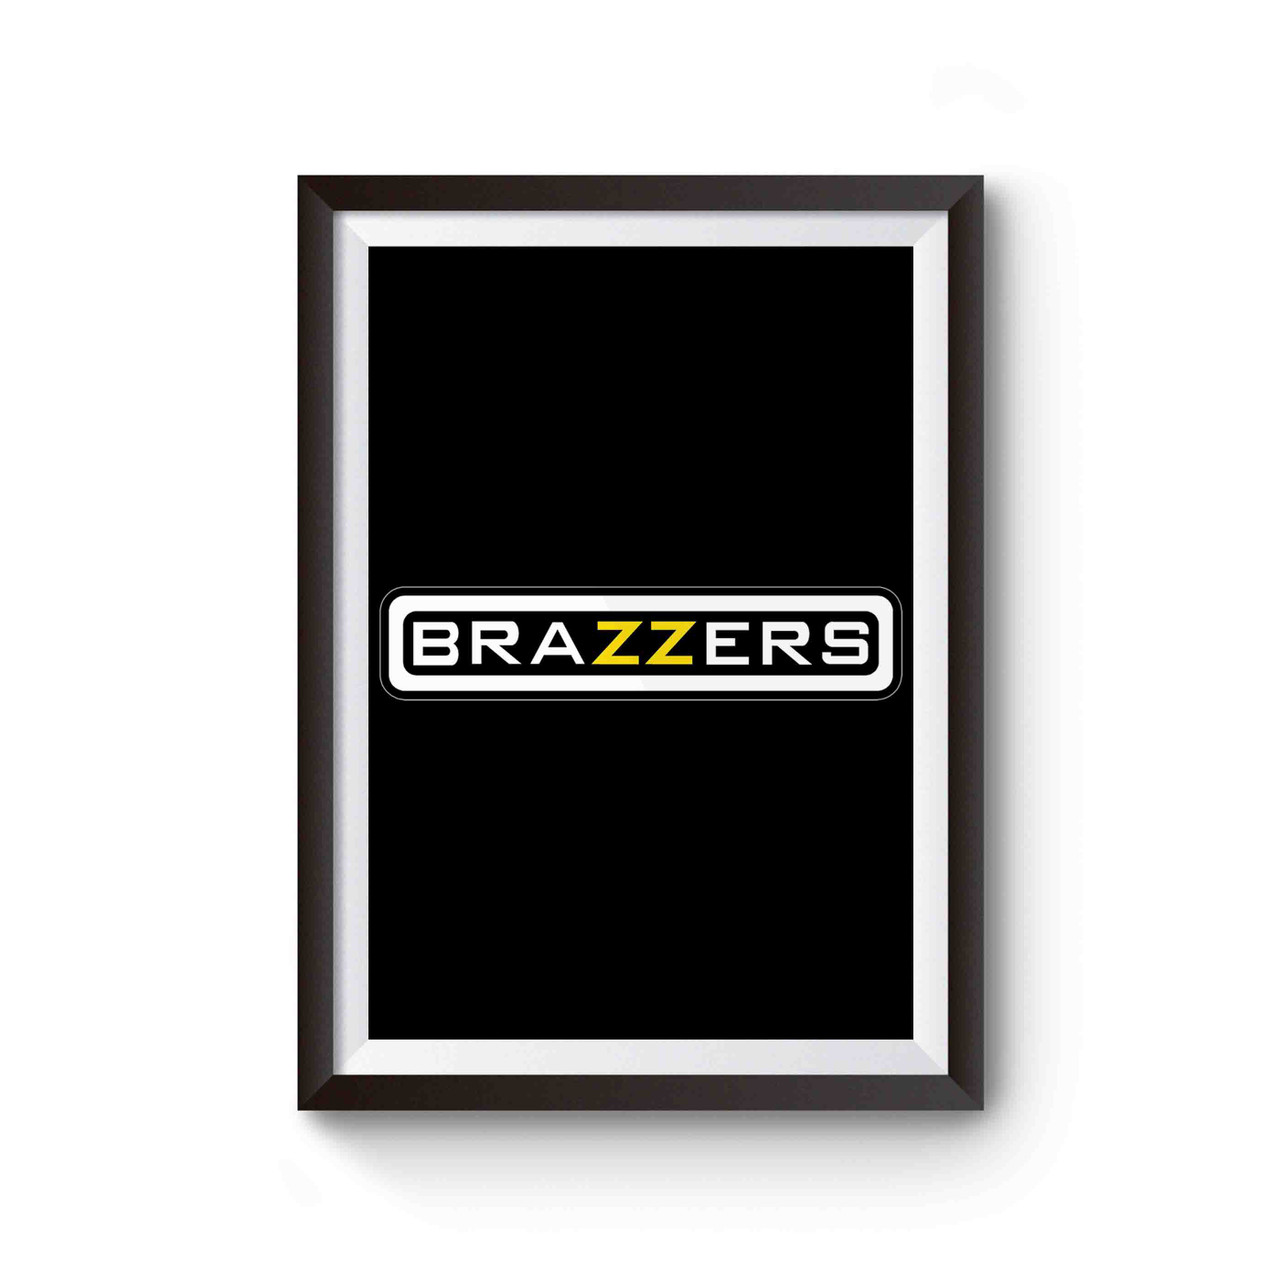 Xxx Black Funny - Brazzers Funny Pornhub XXX Porn Poster